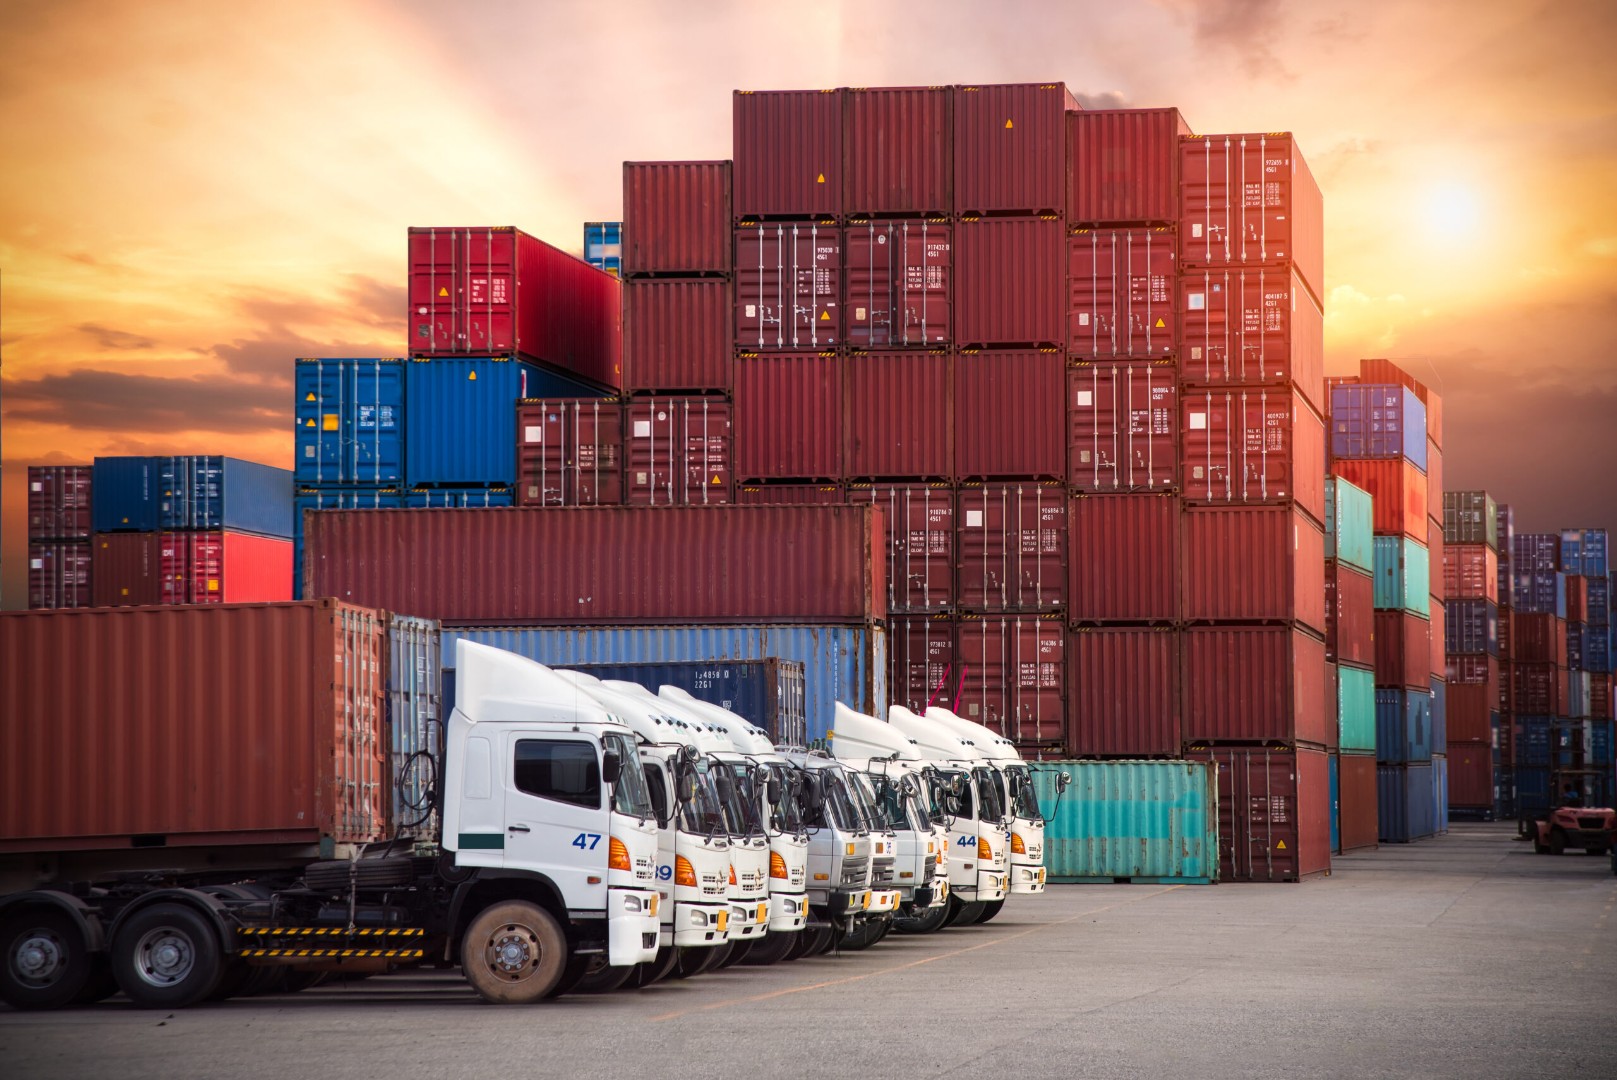 Стоимость контейнерной перевозки между Азией и Европой за год подскочила в пять раз